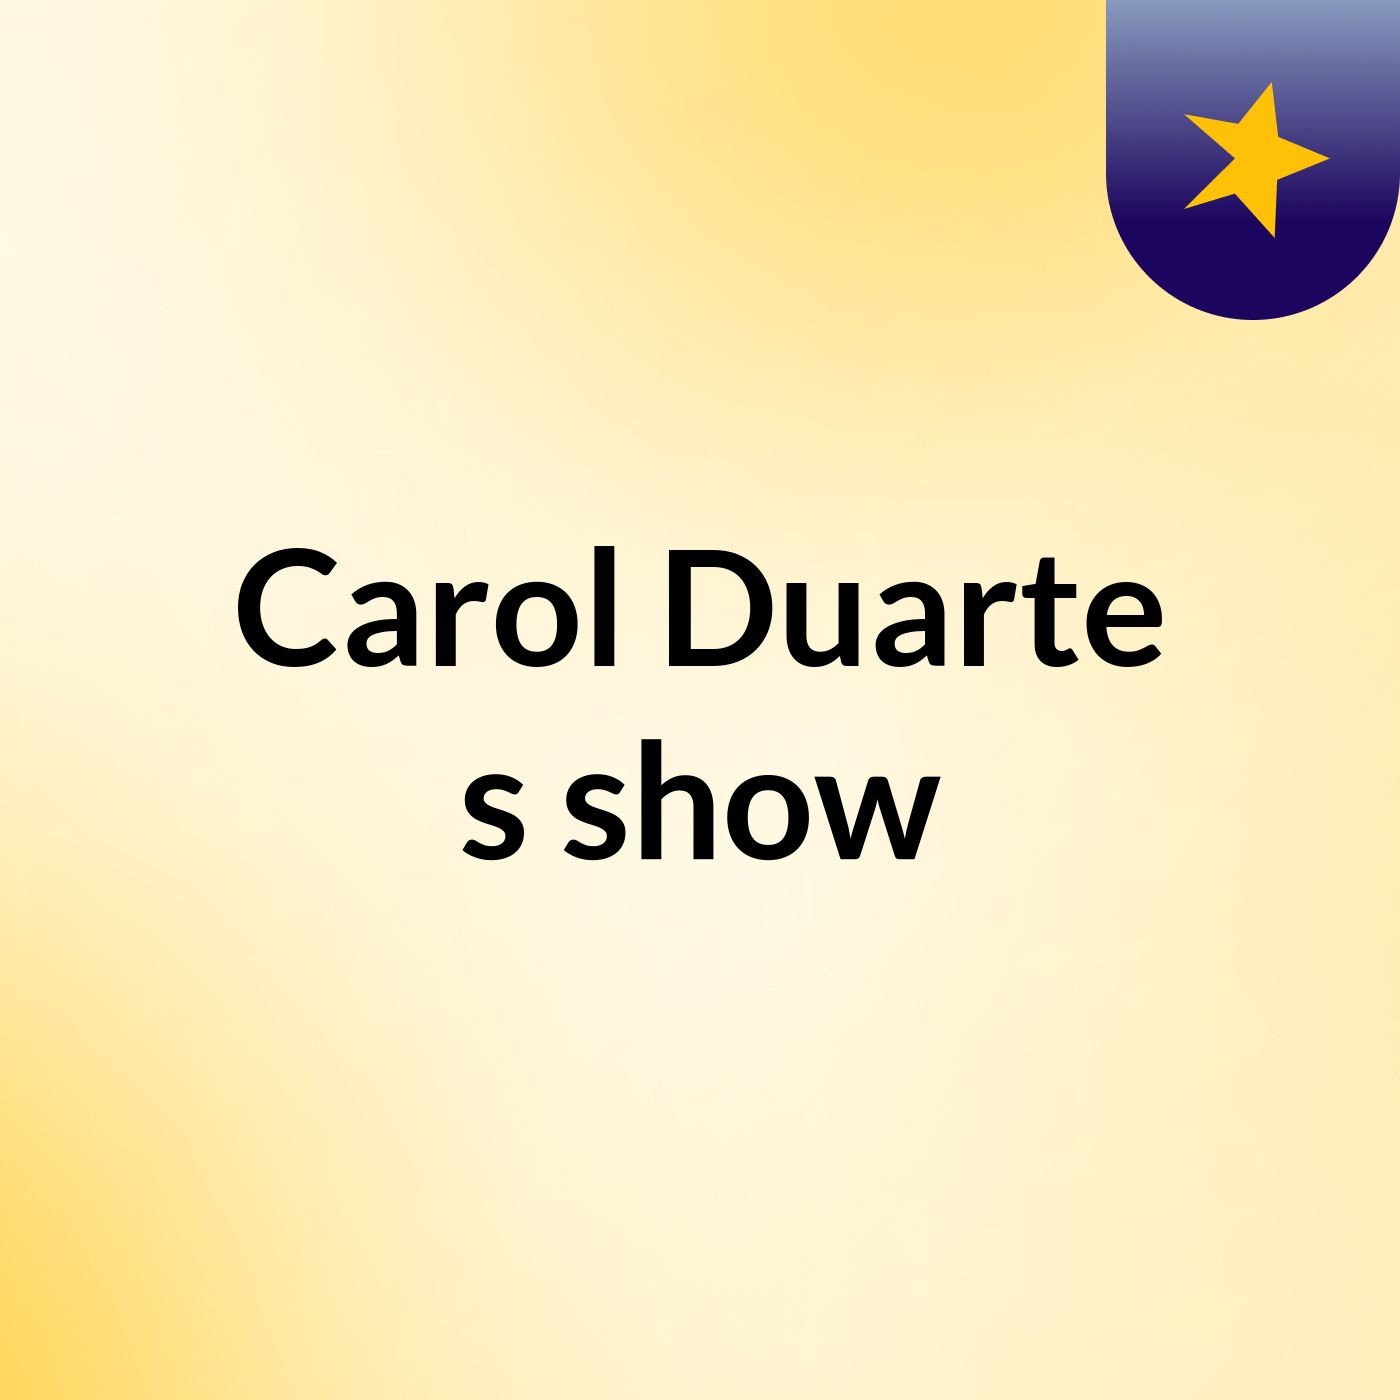 Carol Duarte's show